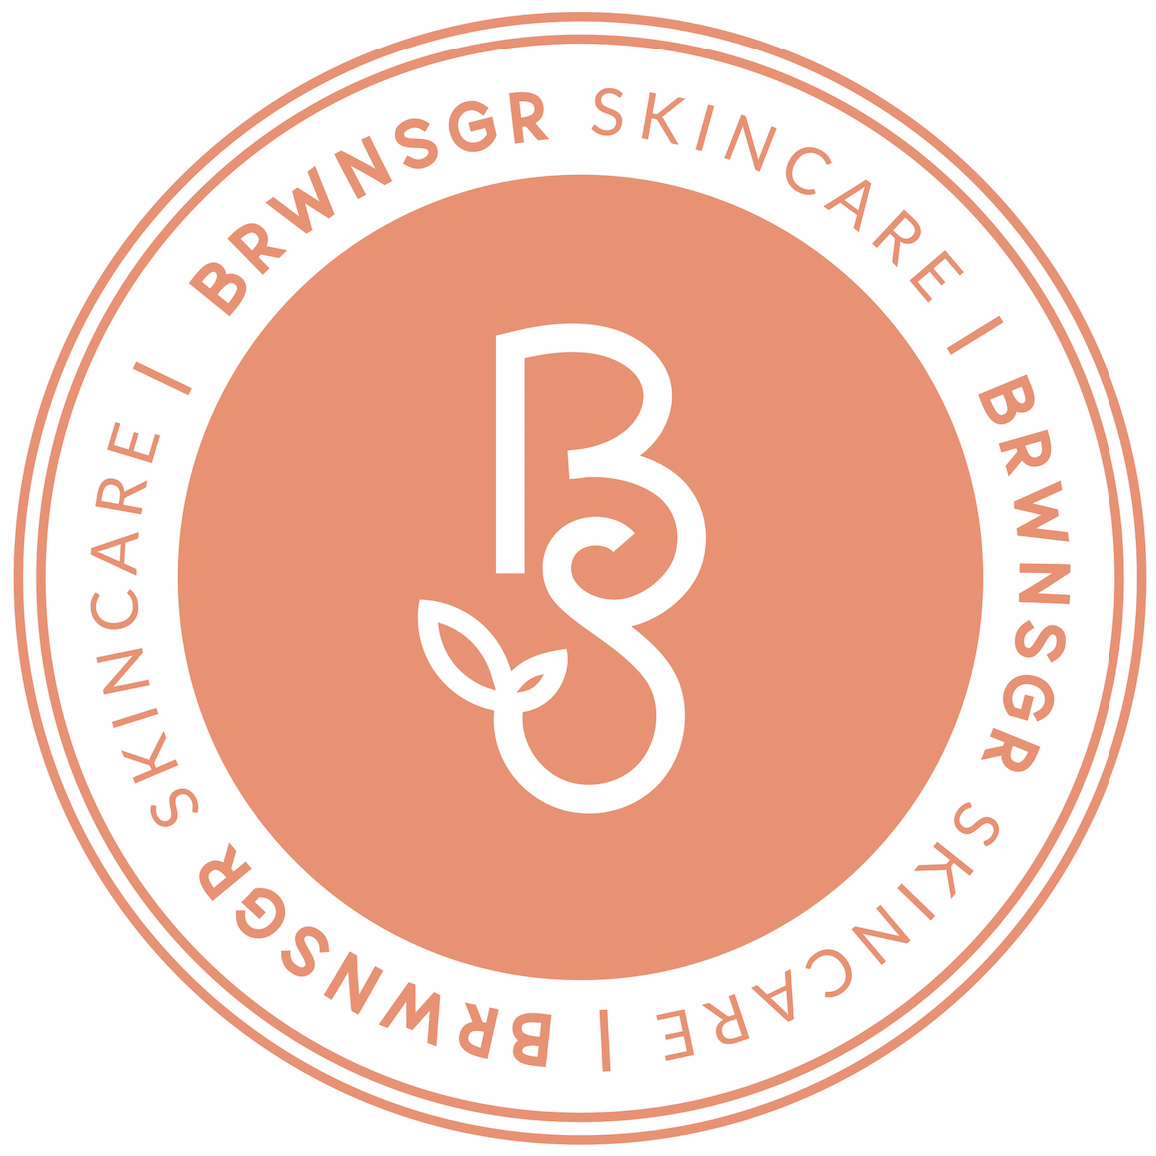 Brwnsgr Skincare